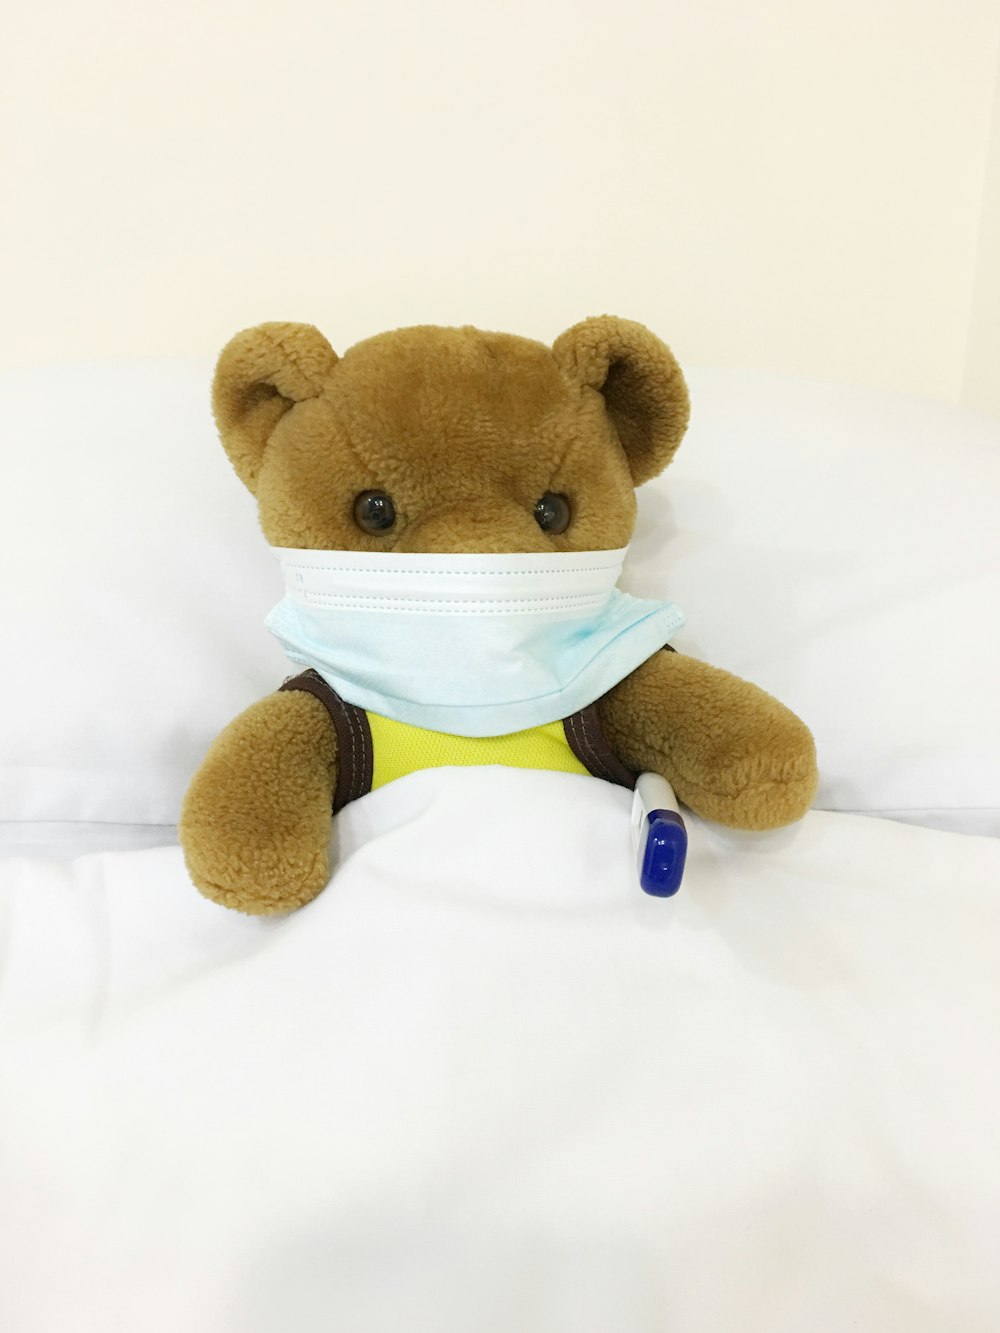 brown bear plush toy on white textile